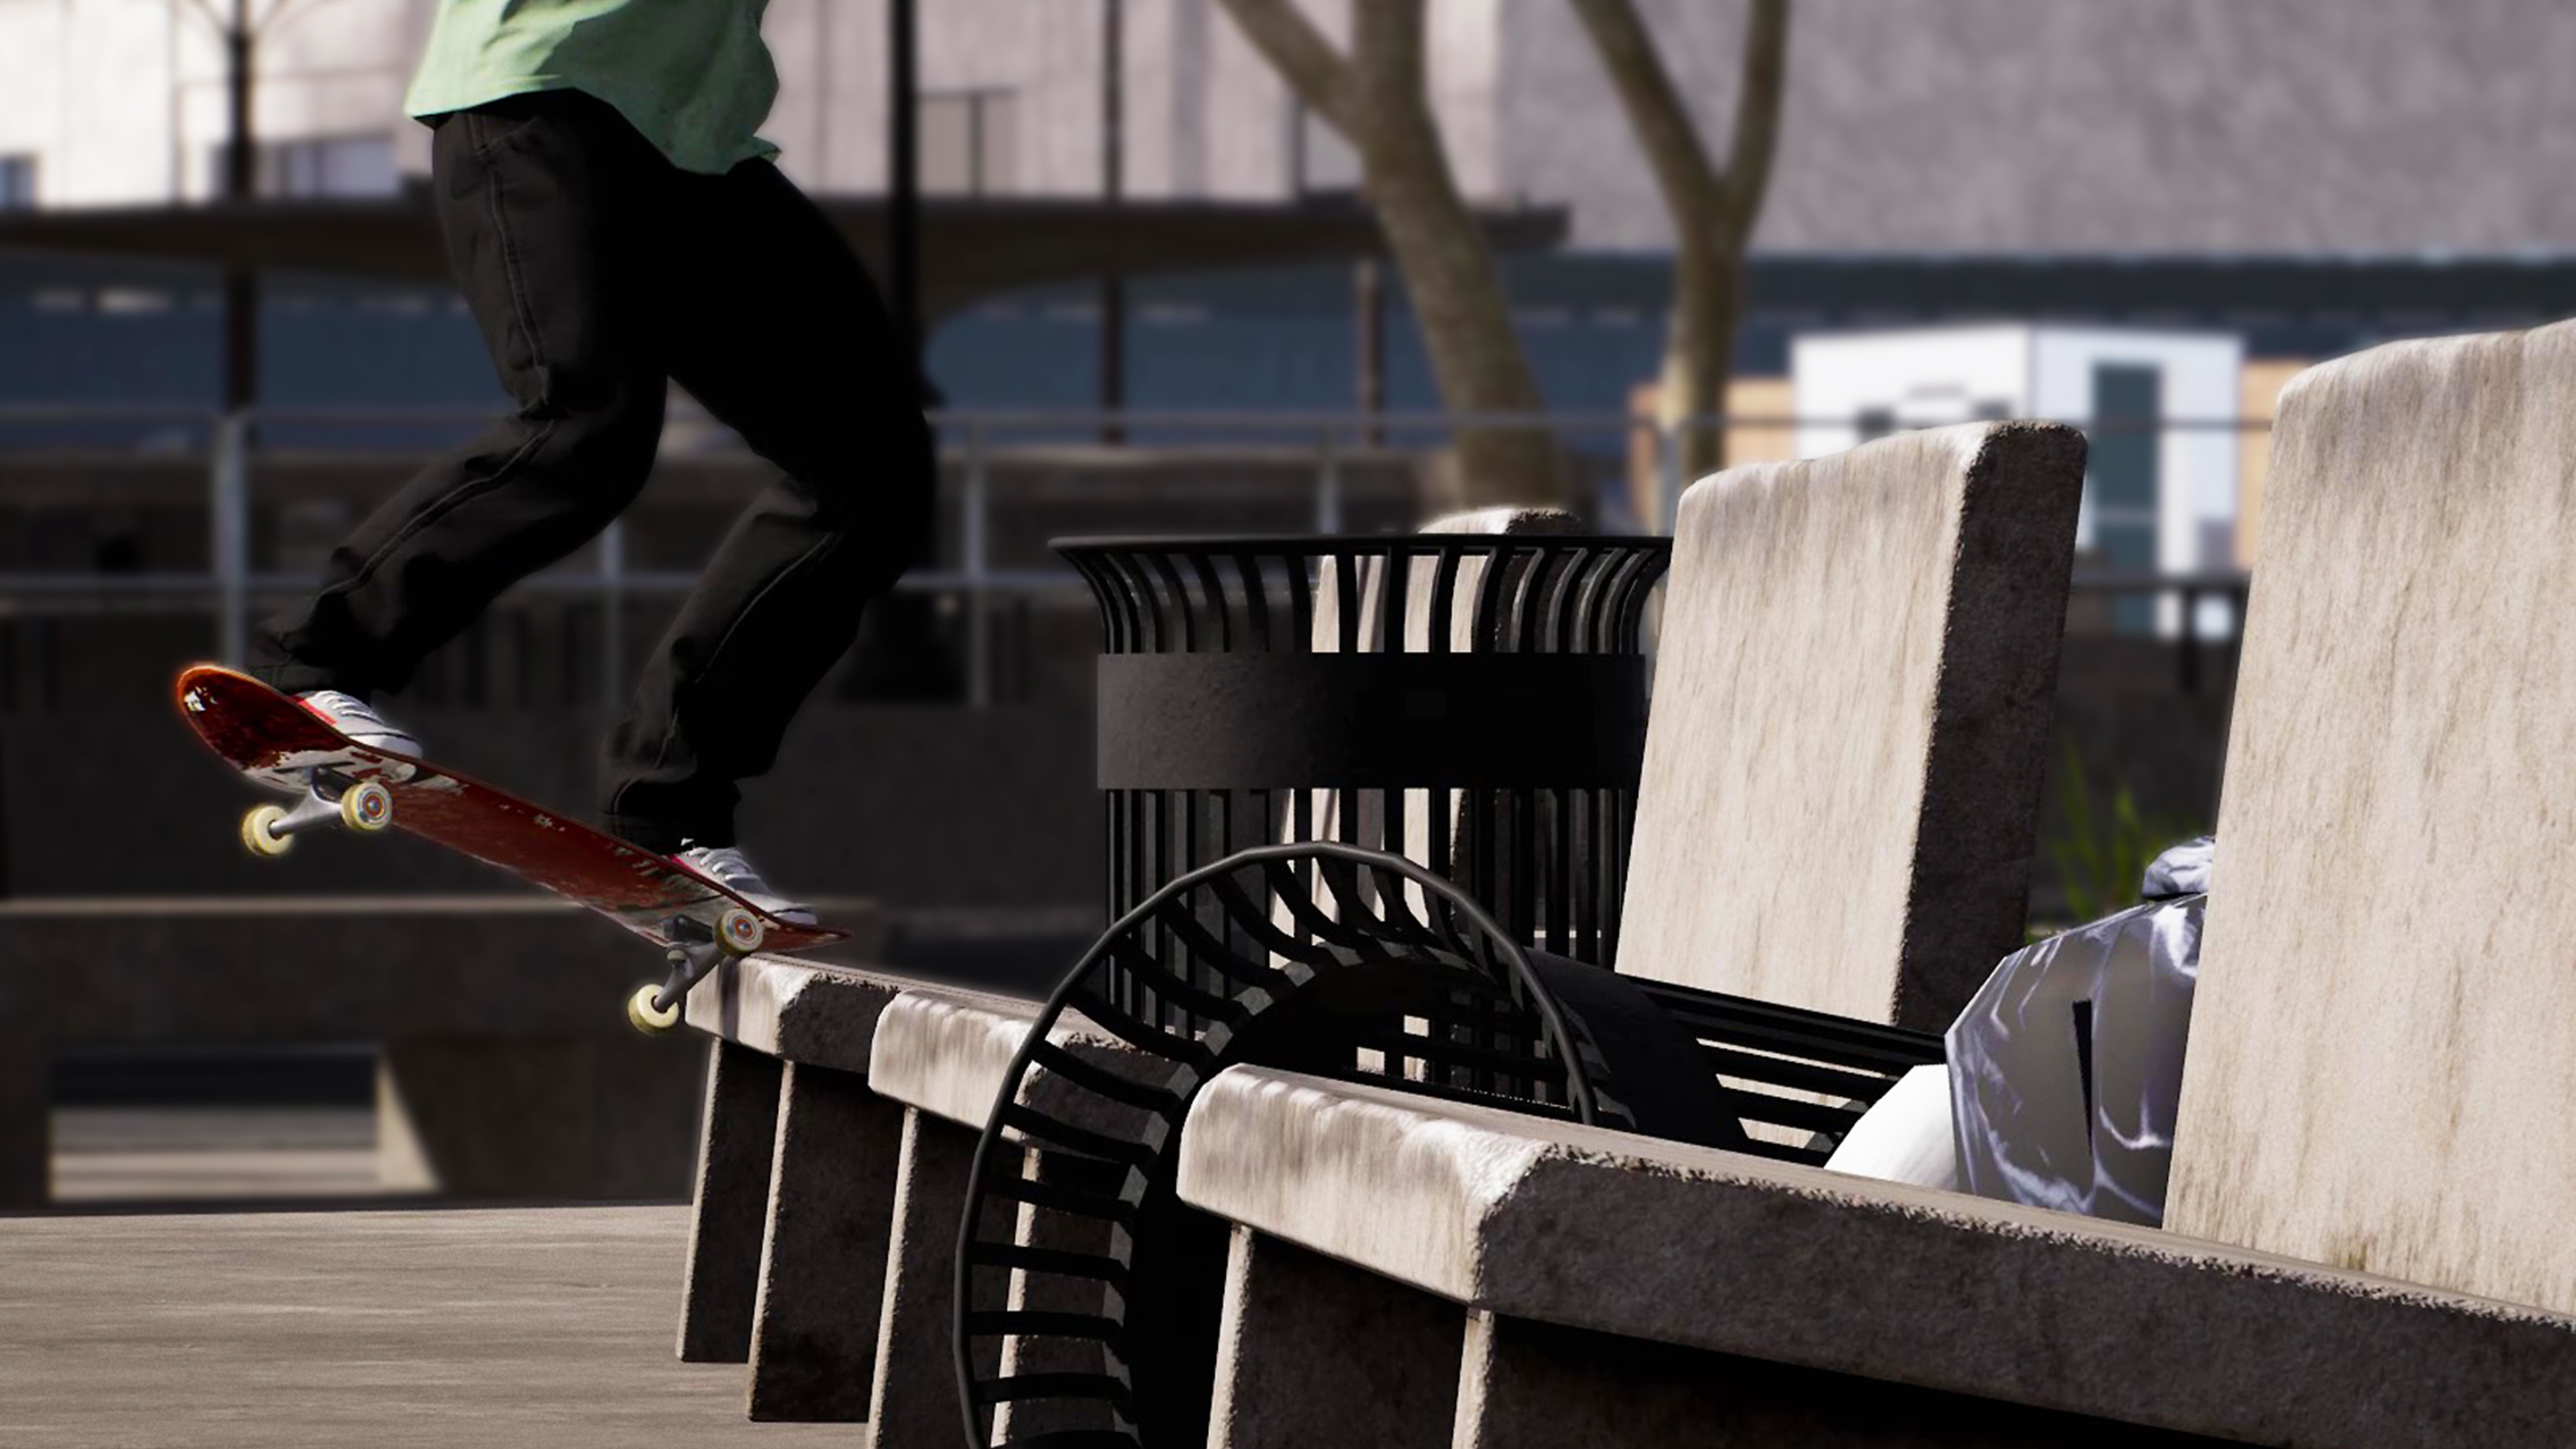 Session: Skate Sim - Istantanea della schermata che mostra uno skater che scivola su una panchina